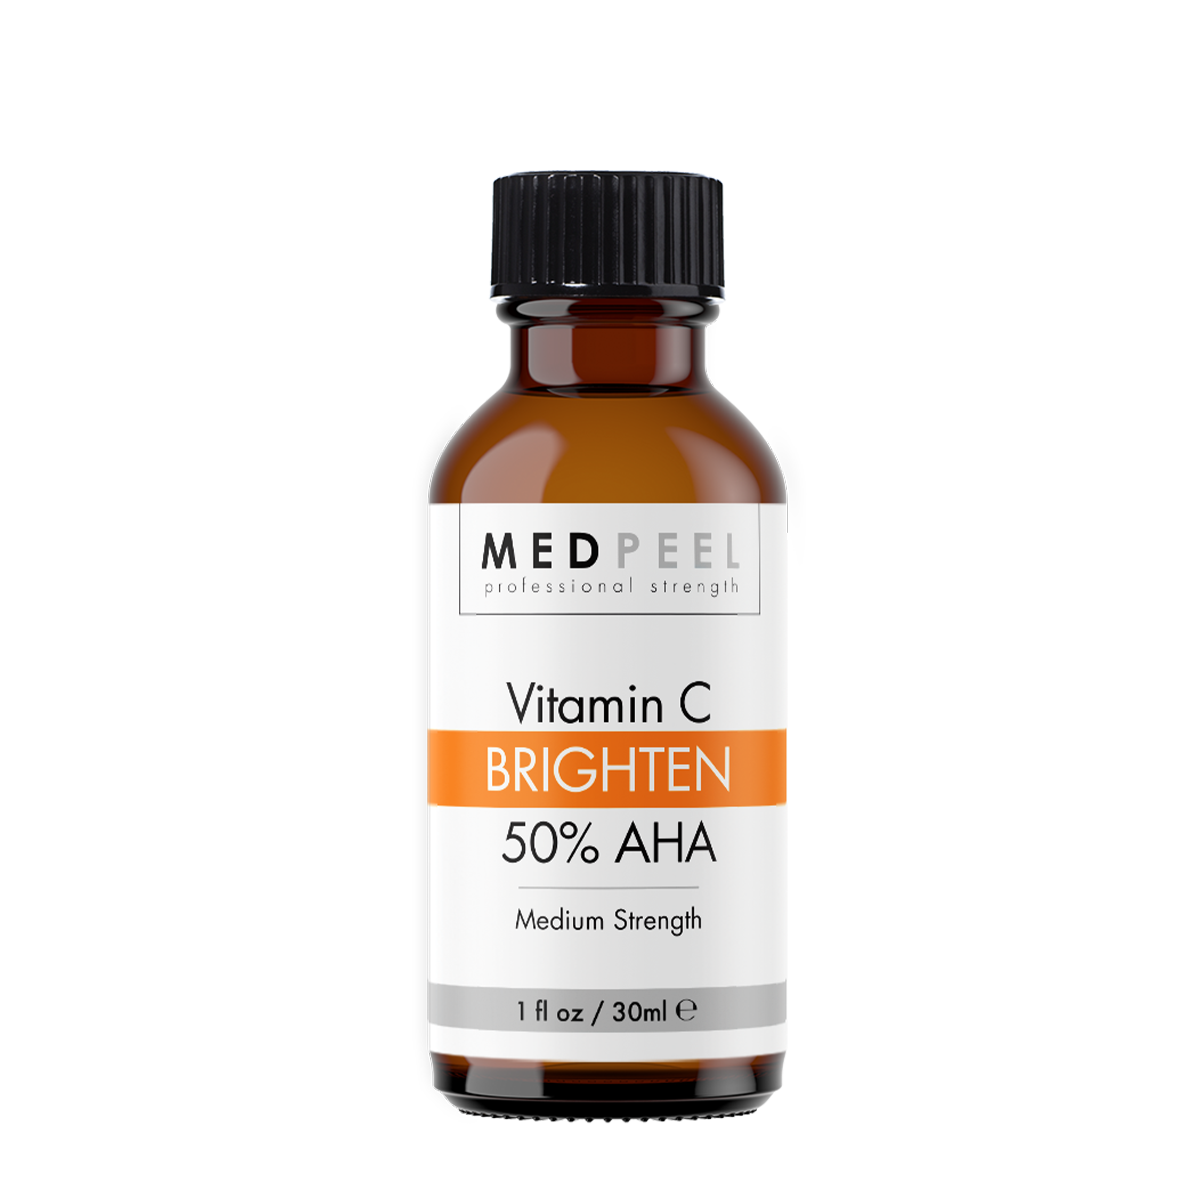 MedPeel Brighten 50% AHA Vitamin C Peel 1oz - Medpeel